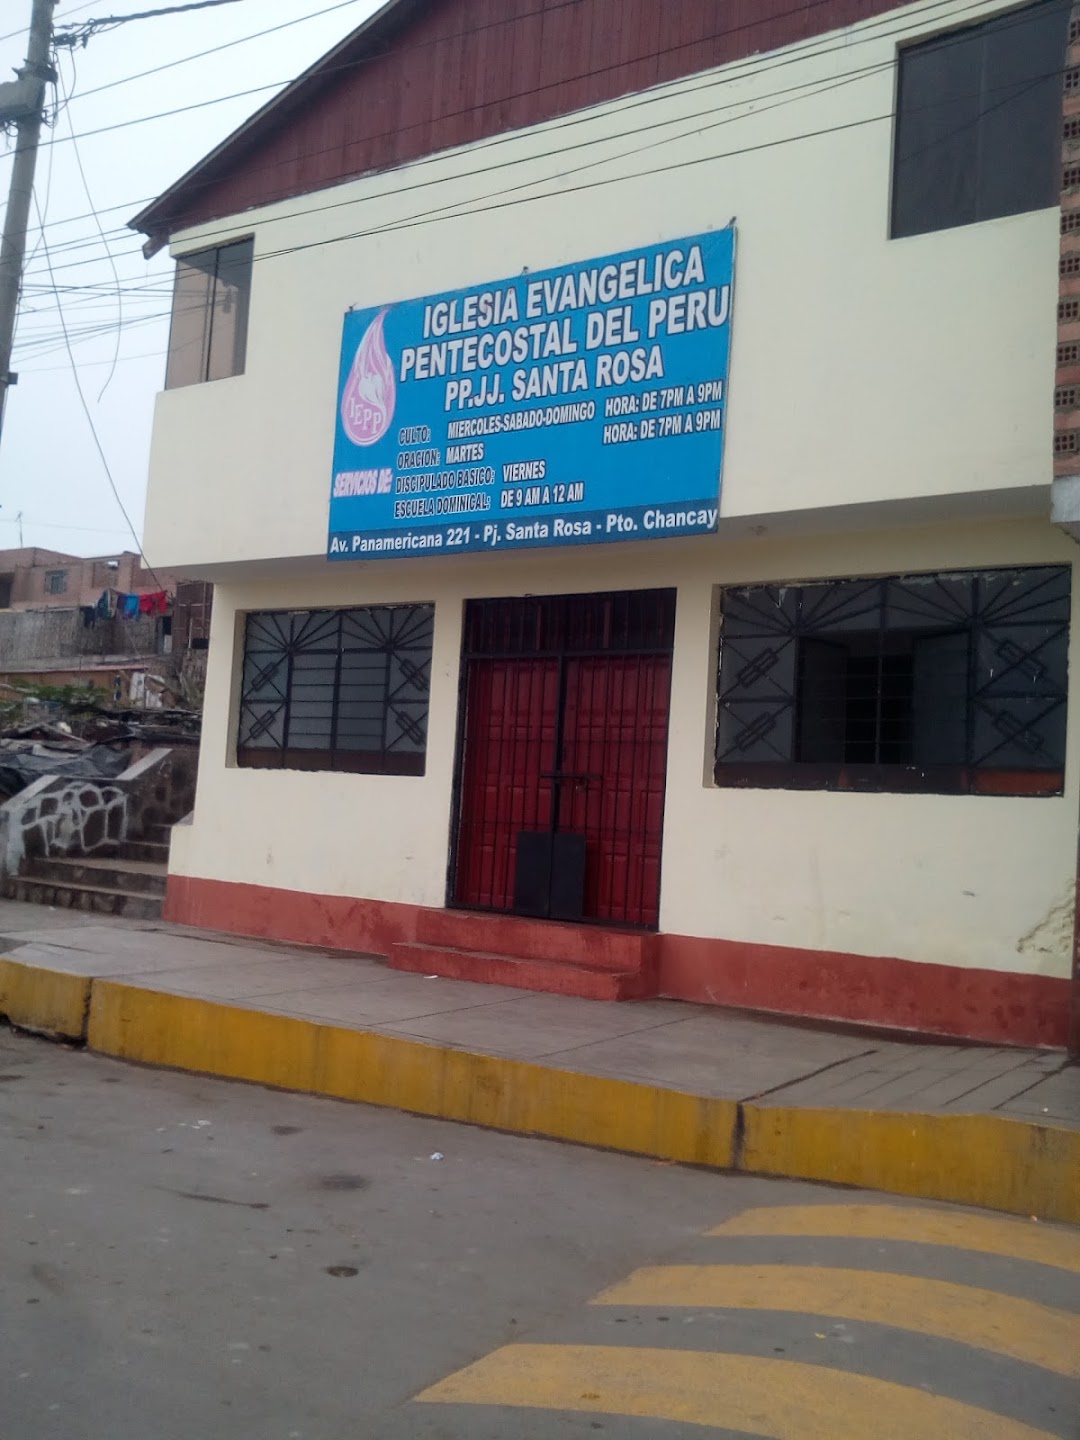 Iglesia Evangélica Pentecostal del Perú